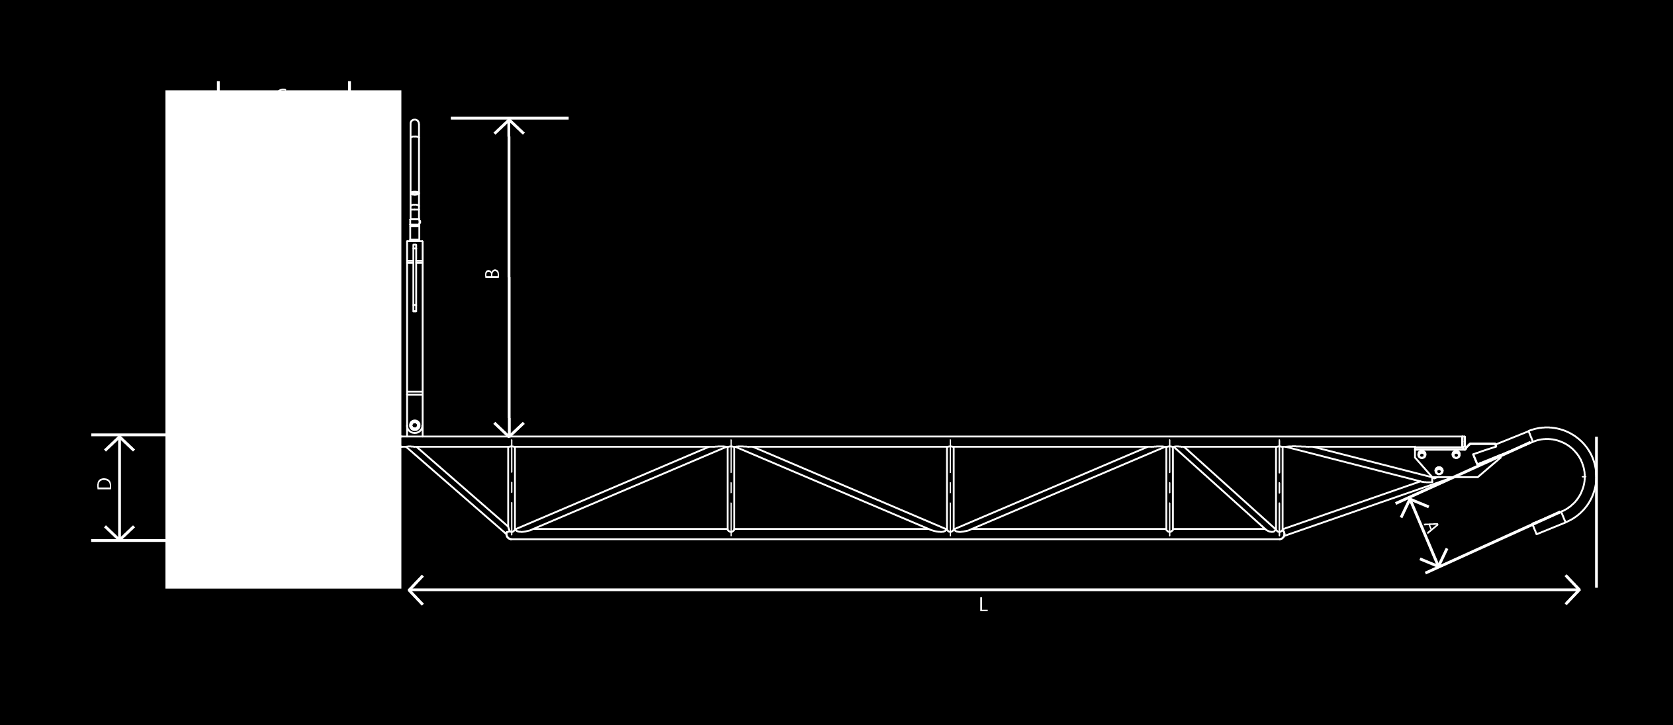 DRABINA ODCIĄGOWA (Udźwig 2 kn) Nr artykułu 77-125x Drabina odciągowa (udźwig 2 kn) - Drabina odciągowa ze strukturą trójkątną - udźwig 2 kn - Do zastosowania jako platforma robocza zawieszana przy